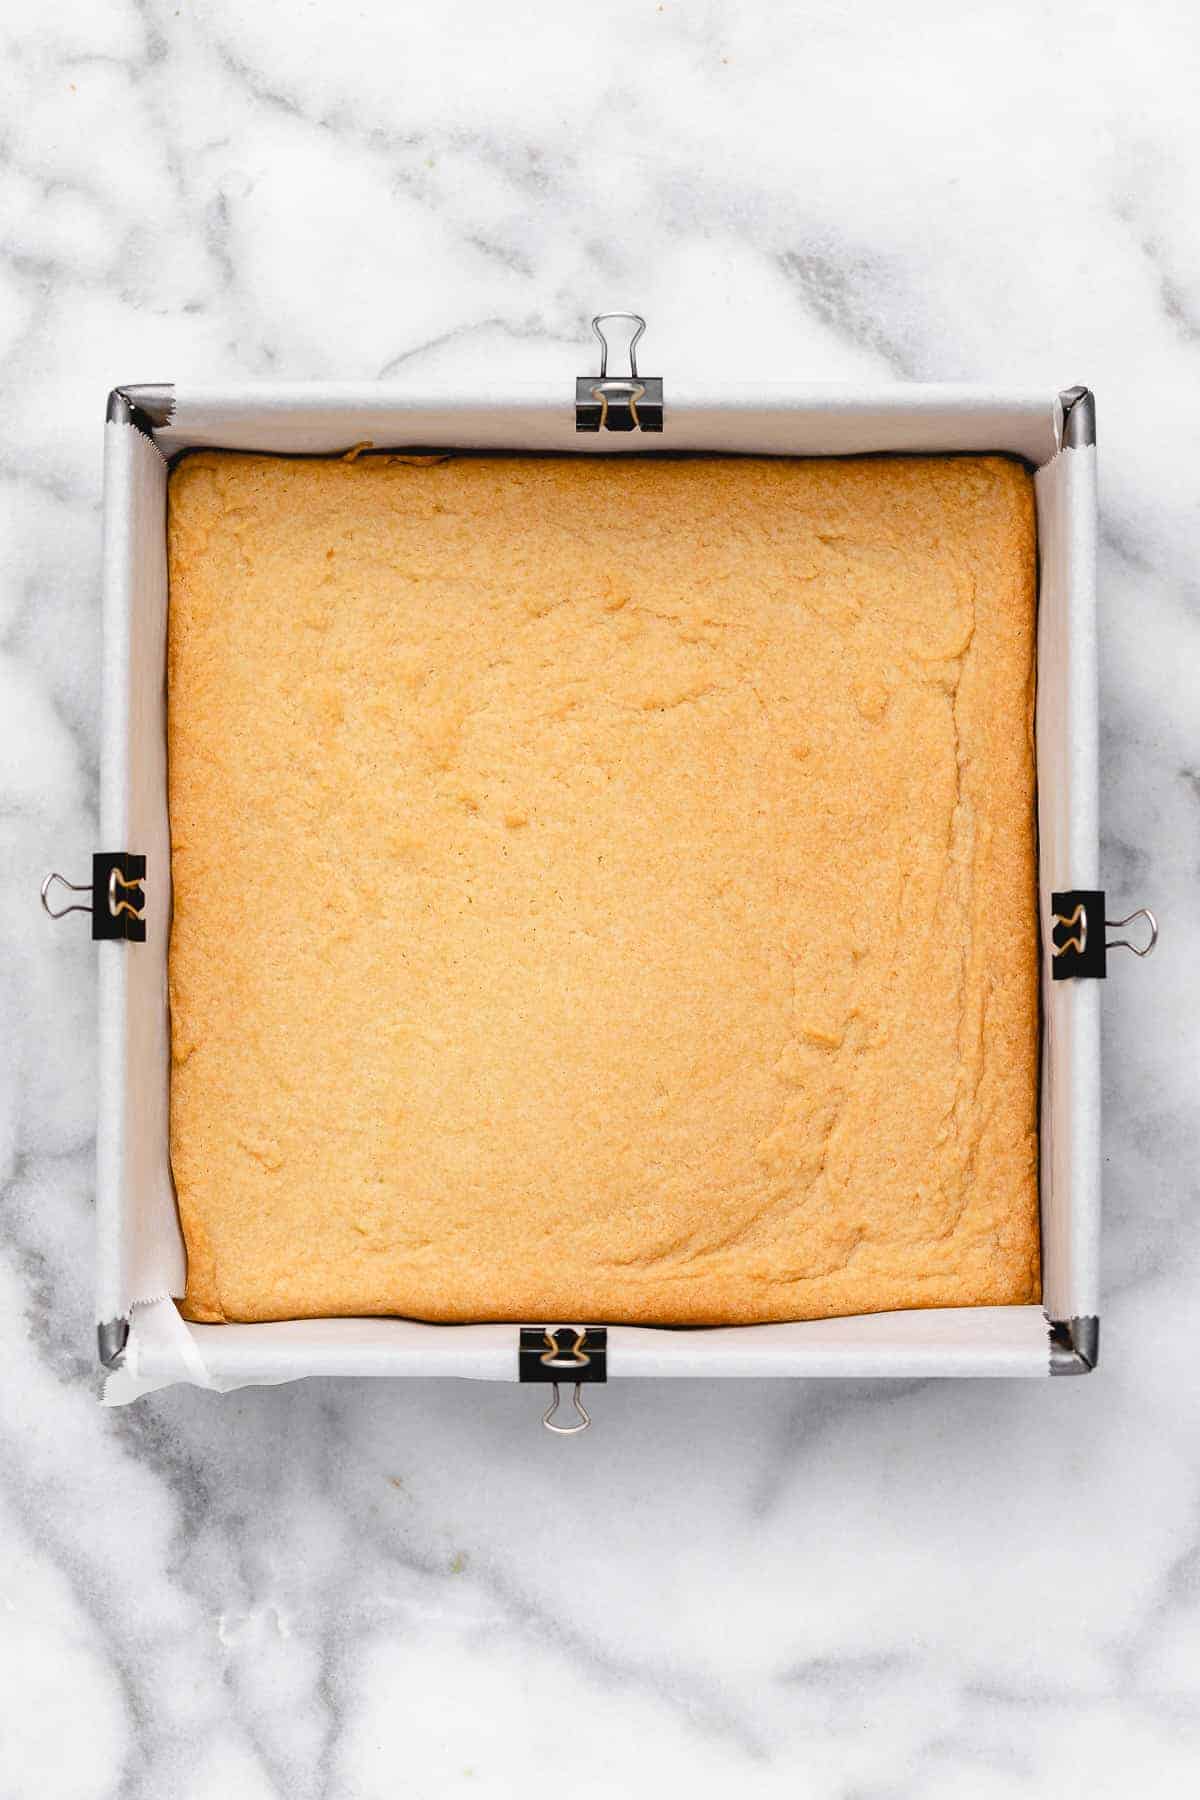 Sugar cookie bars in pan before frosting